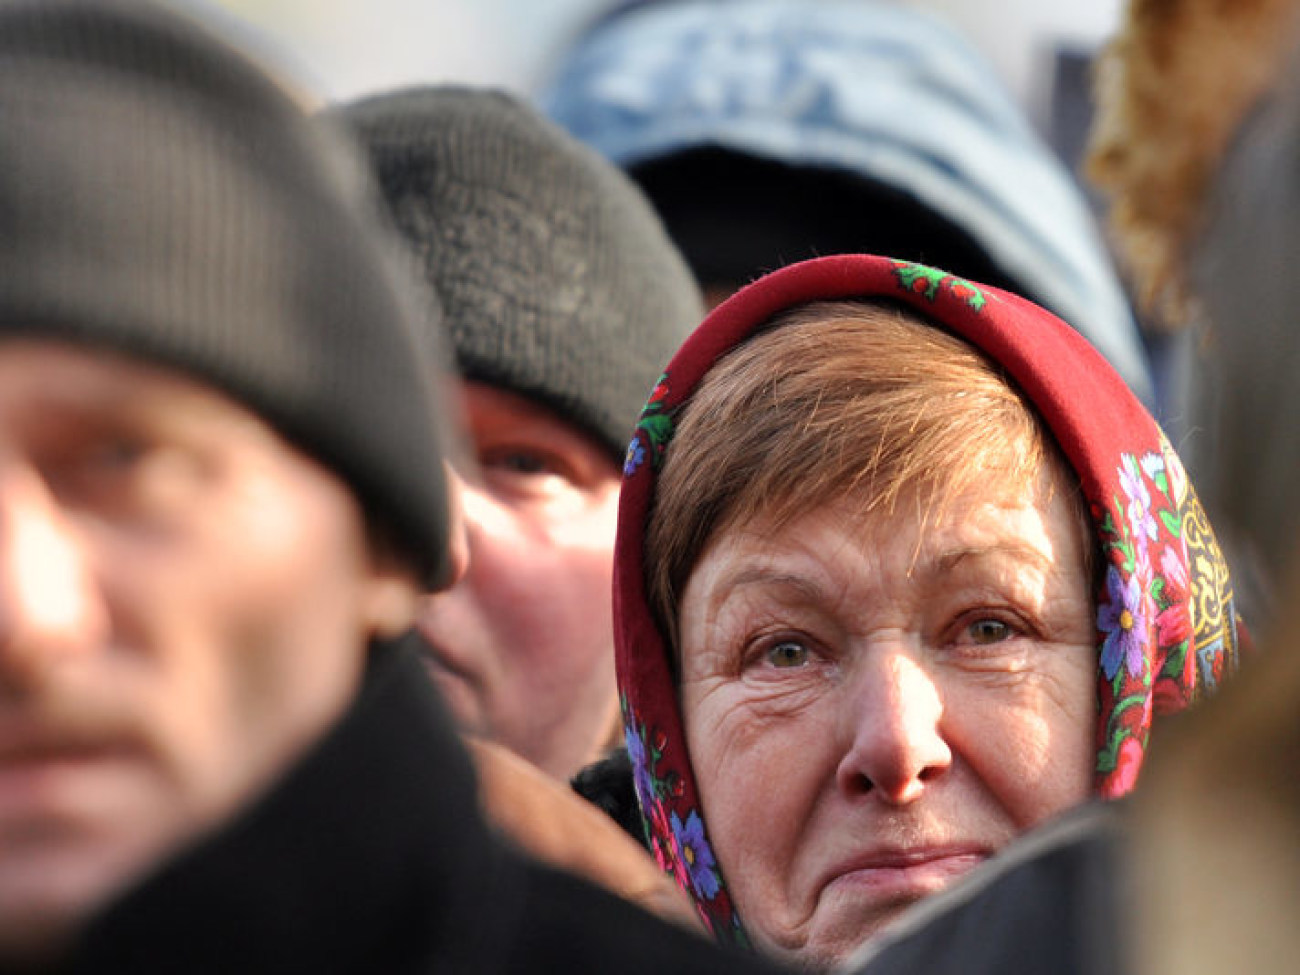 Протестующие помянули погибших, 26 января 2014г.